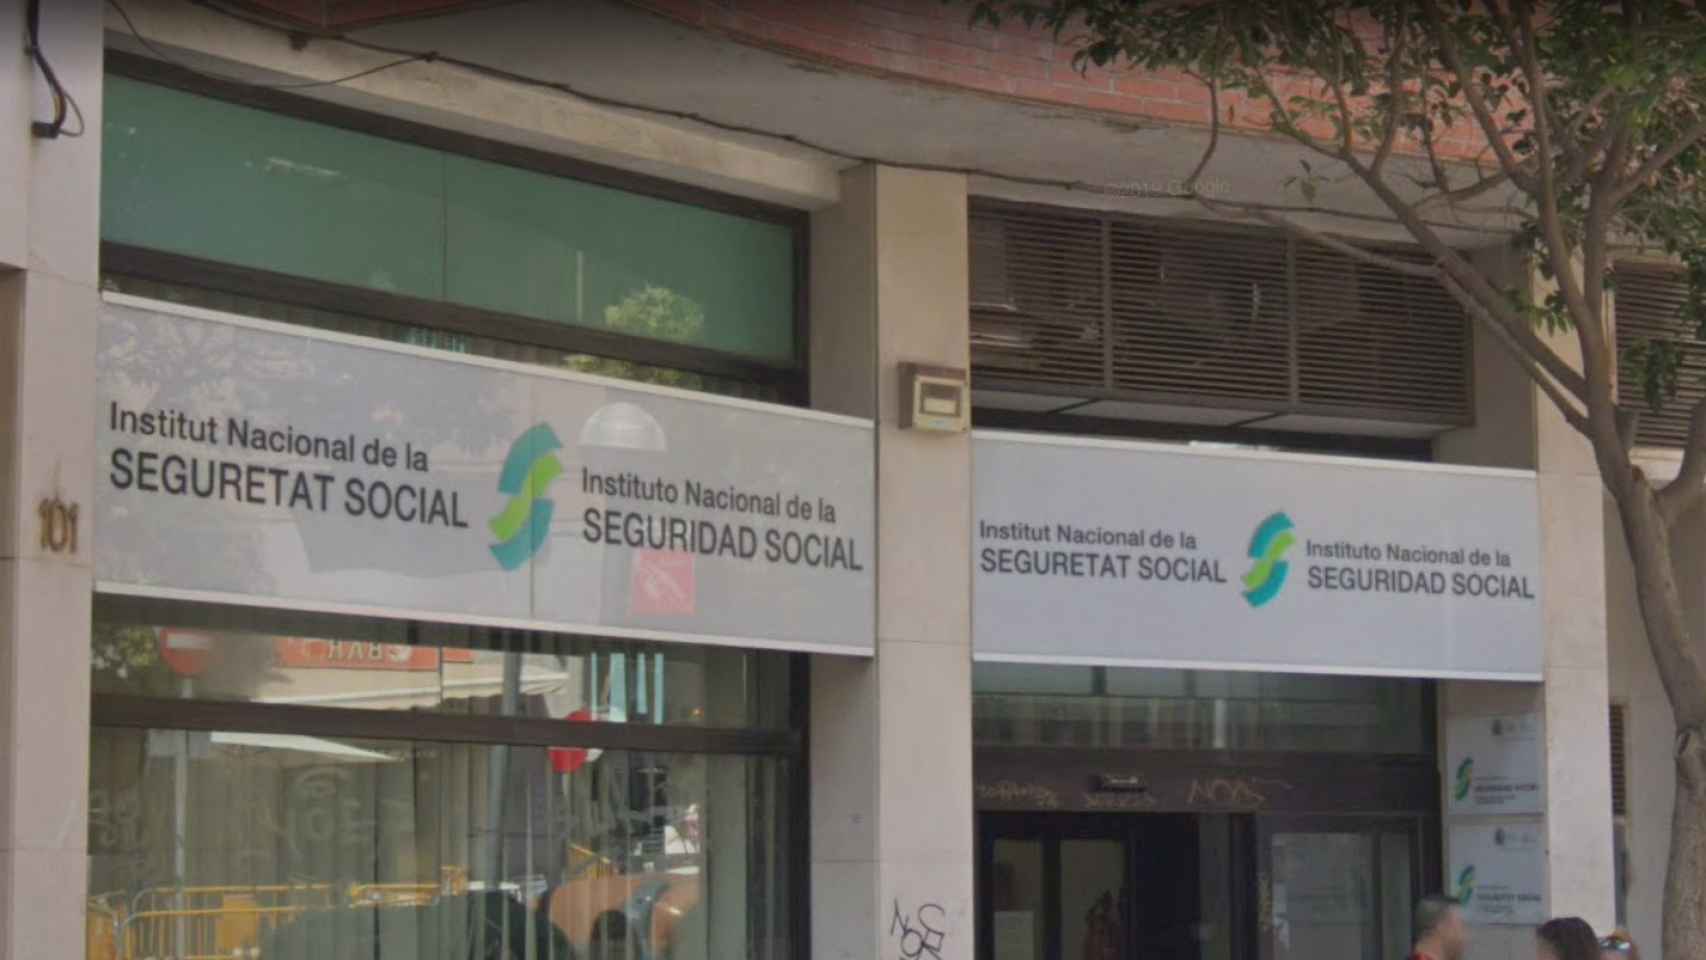 Oficina del Instituto Nacional de la Seguridad Social en l'Hospitalet de Llobregat / GOOGLE MAPS